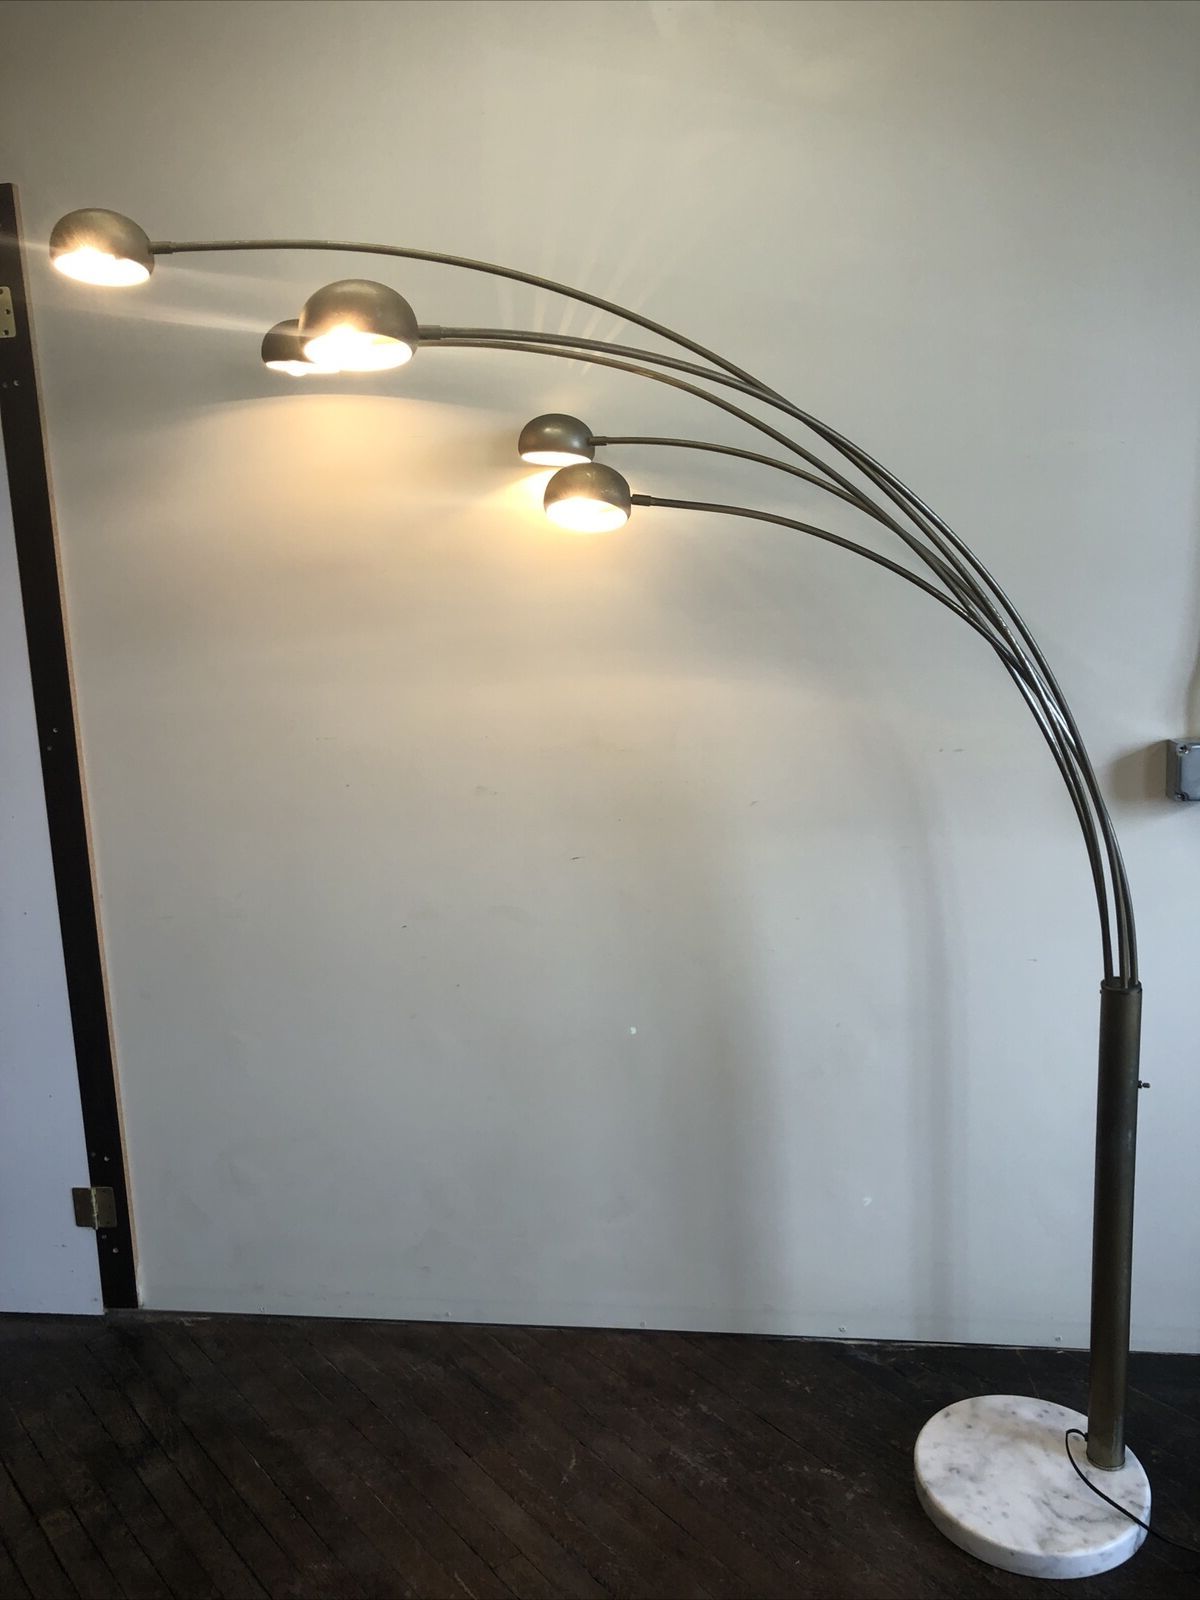 Ebay In Recent 5 Light Arc Floor Lamps (View 5 of 15)